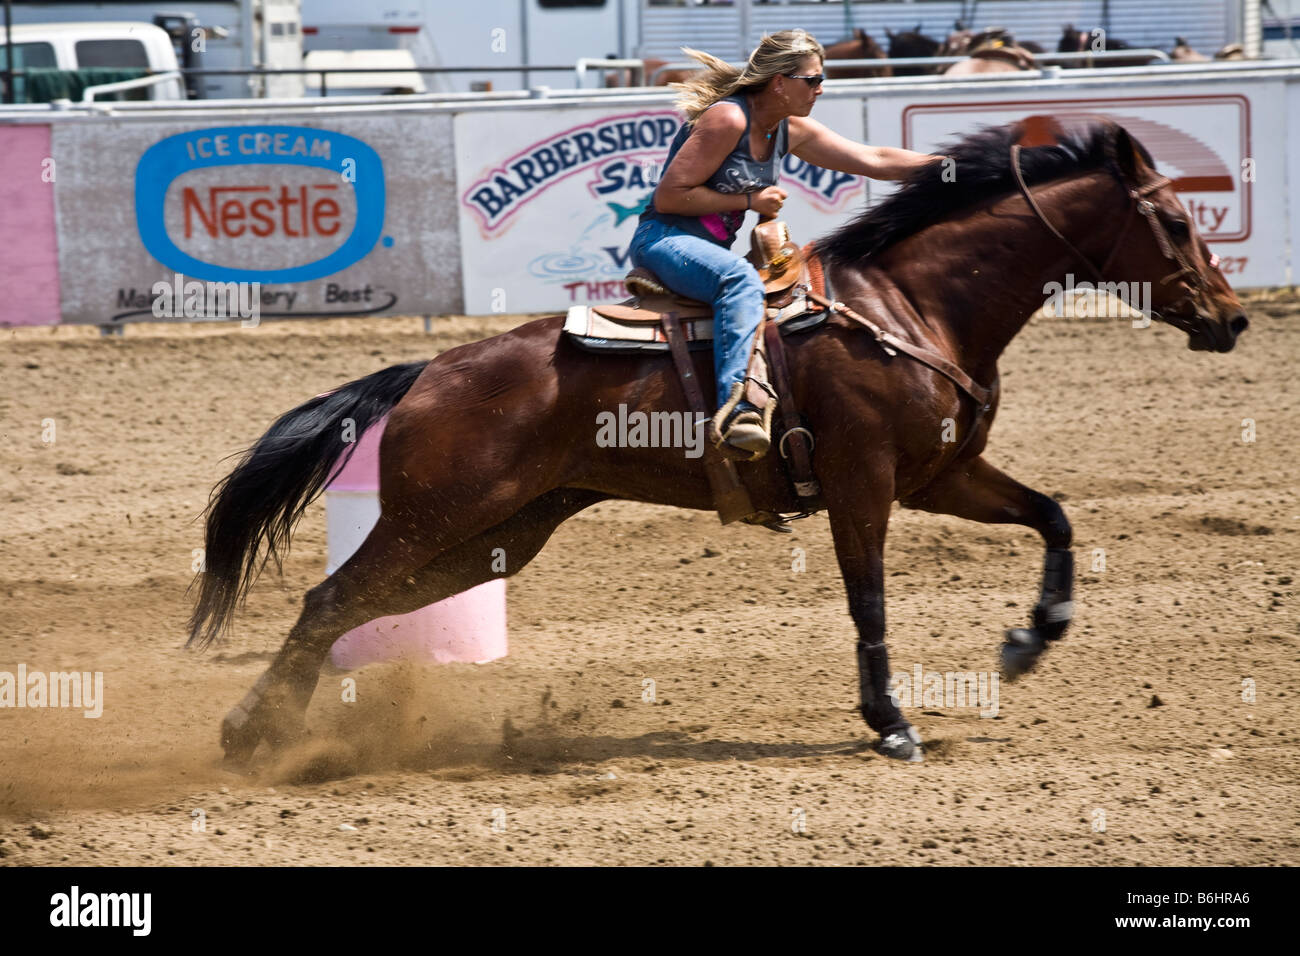 Barrel racing at rodeo at Three Rivers, California Stock Photo